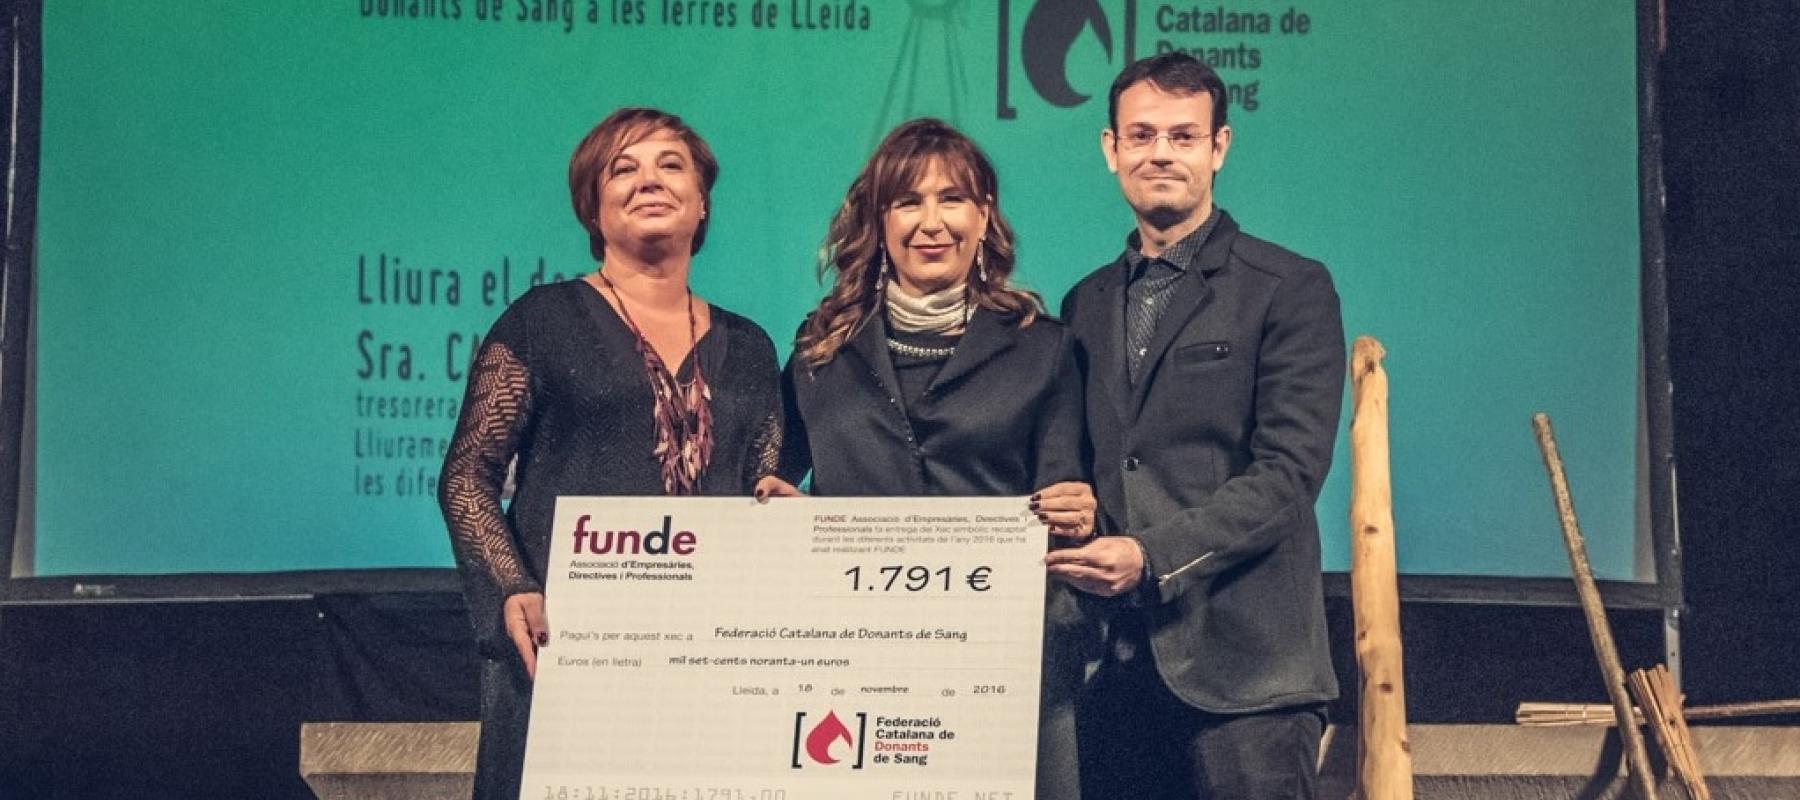 La XI edición de los Premios FUNDE galardonó a las Asociaciones de Donantes de Sangre de las Comarcas de Lleida